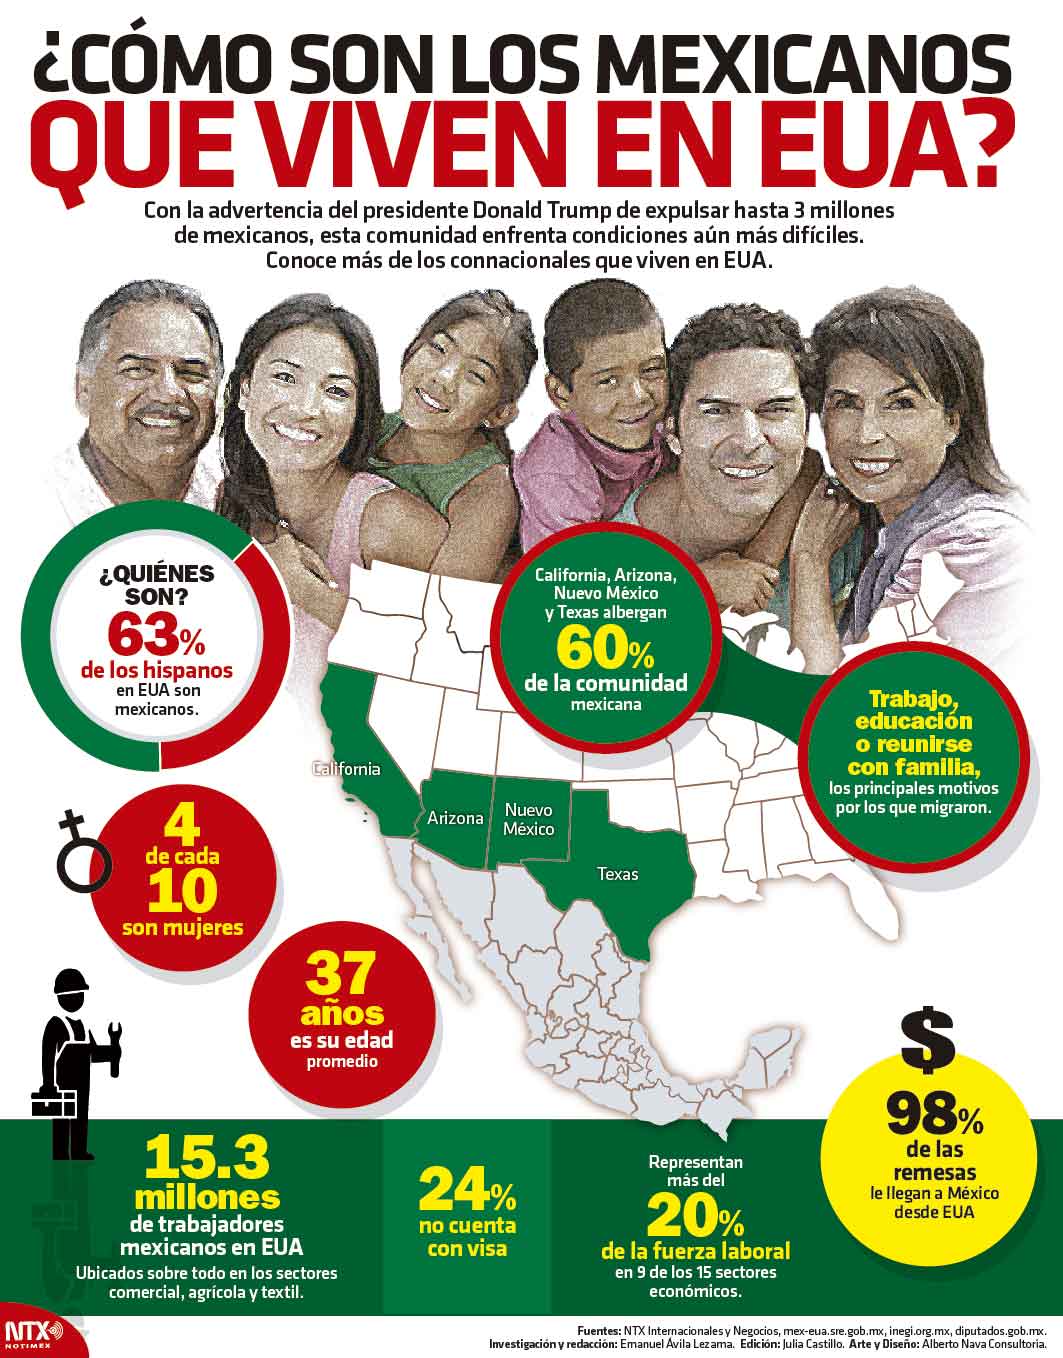 Cmo son los mexicanos que viven en EUA?